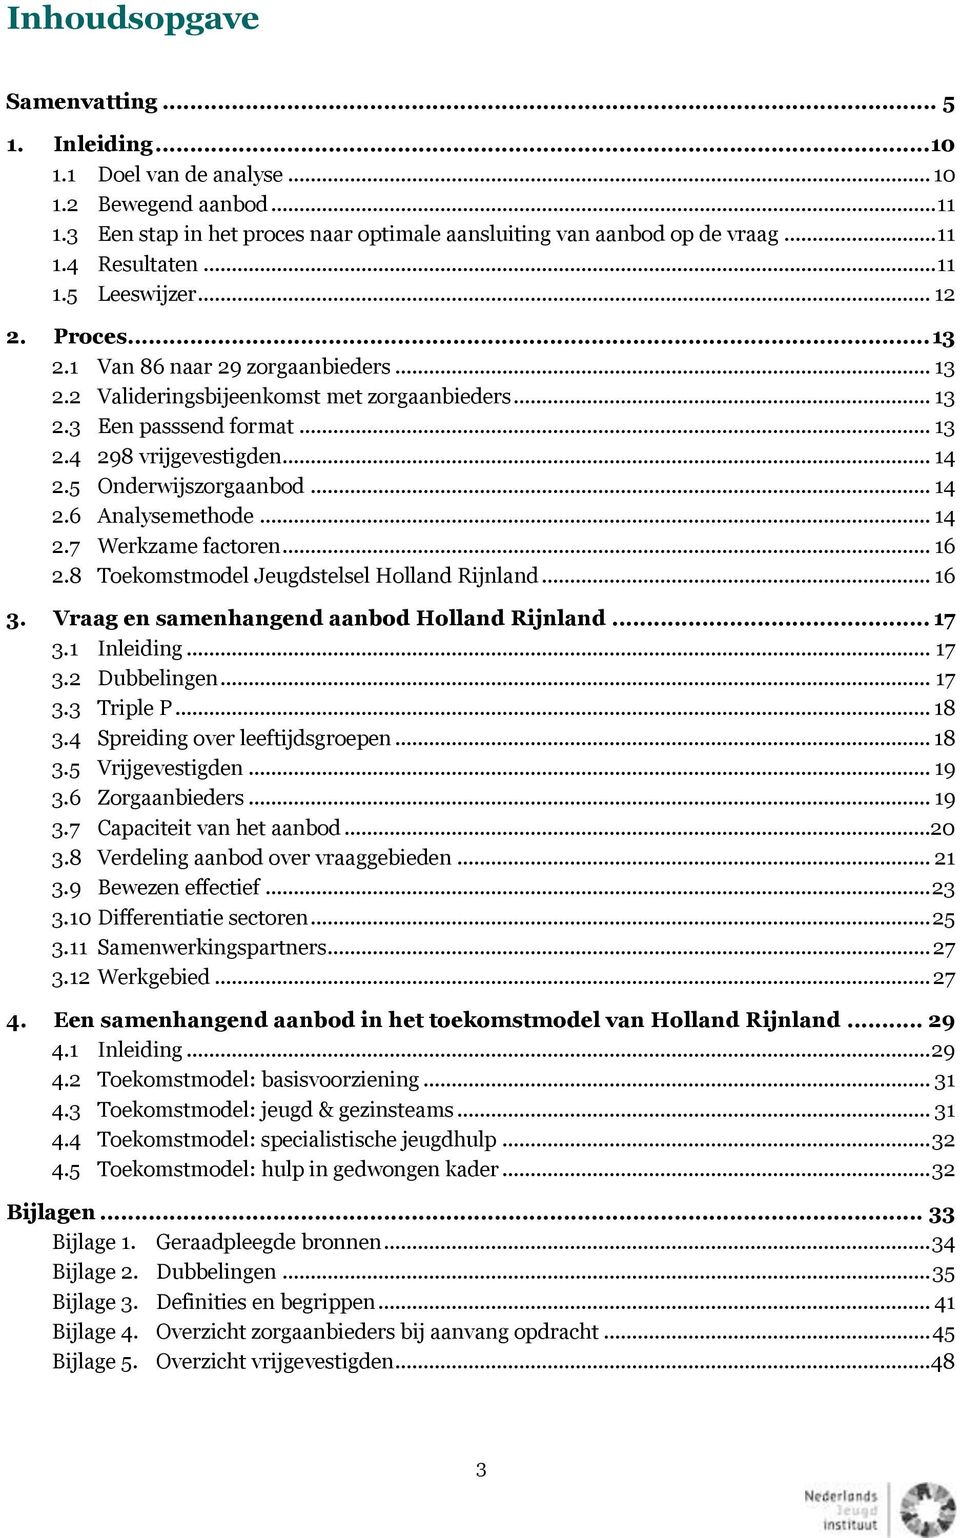 5 Onderwijszorgaanbod... 14 2.6 Analysemethode... 14 2.7 Werkzame factoren... 16 2.8 Toekomstmodel Jeugdstelsel Holland Rijnland... 16 3. Vraag en samenhangend aanbod Holland Rijnland... 17 3.